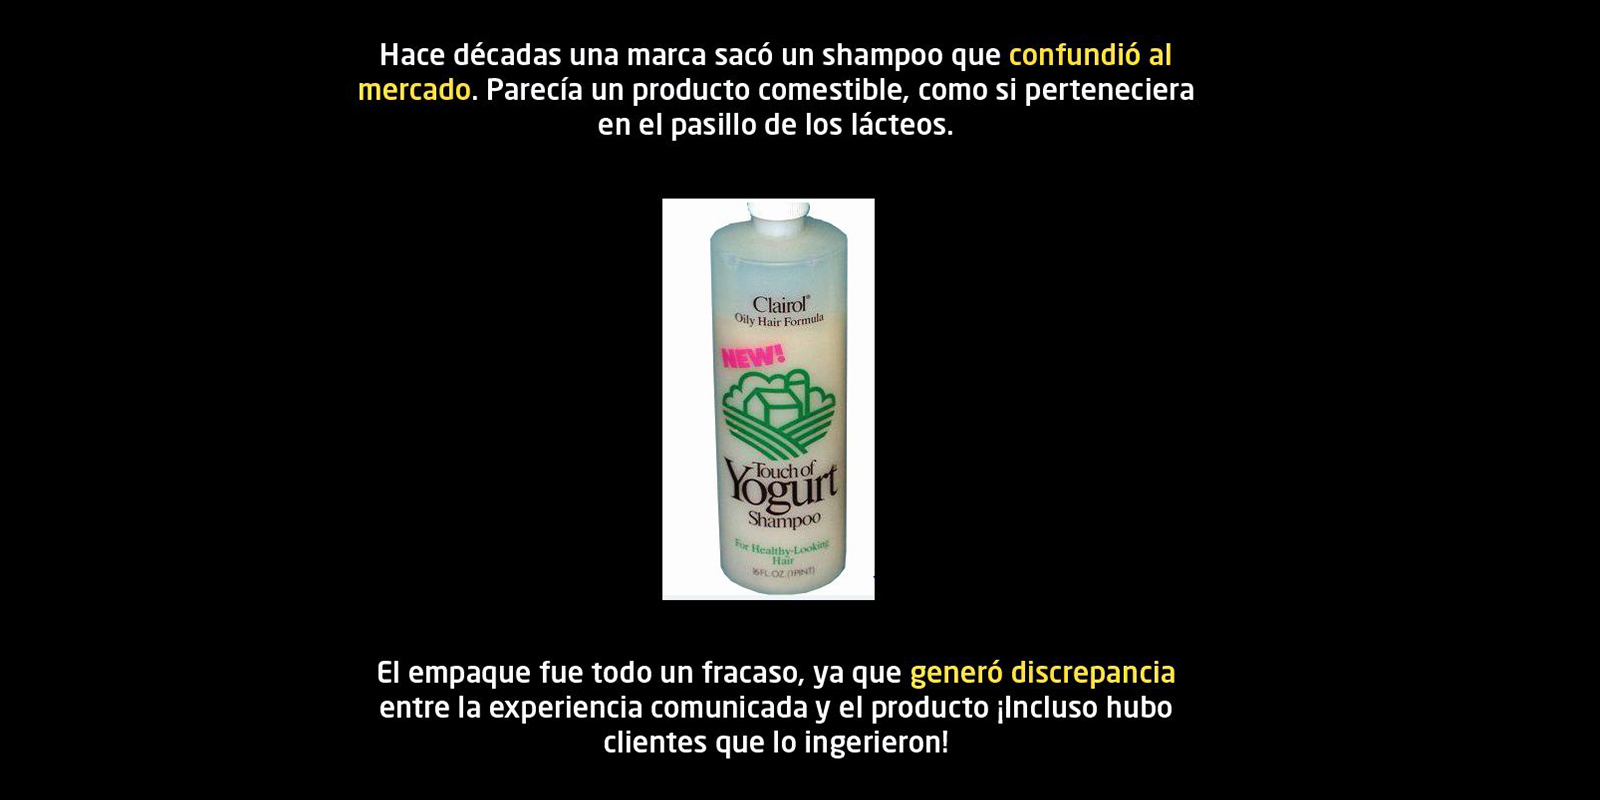 Botella de shampoo con diseño de etiqueta que parece la de un producto lácteo.